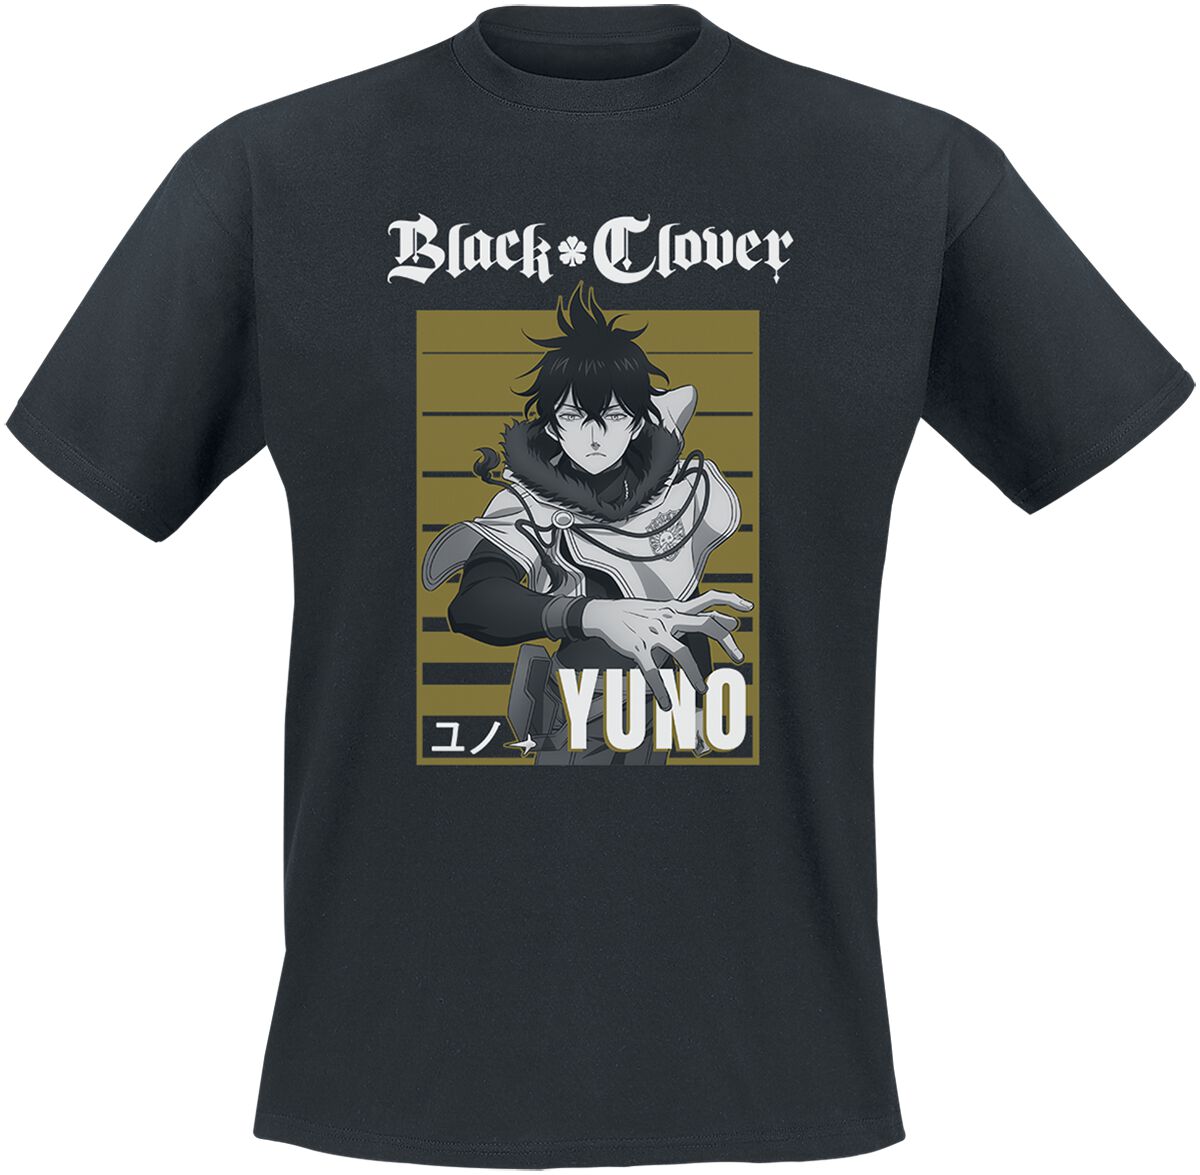 Black Clover - Anime T-Shirt - Yuno - S bis XL - für Männer - Größe L - schwarz  - Lizenzierter Fanartikel